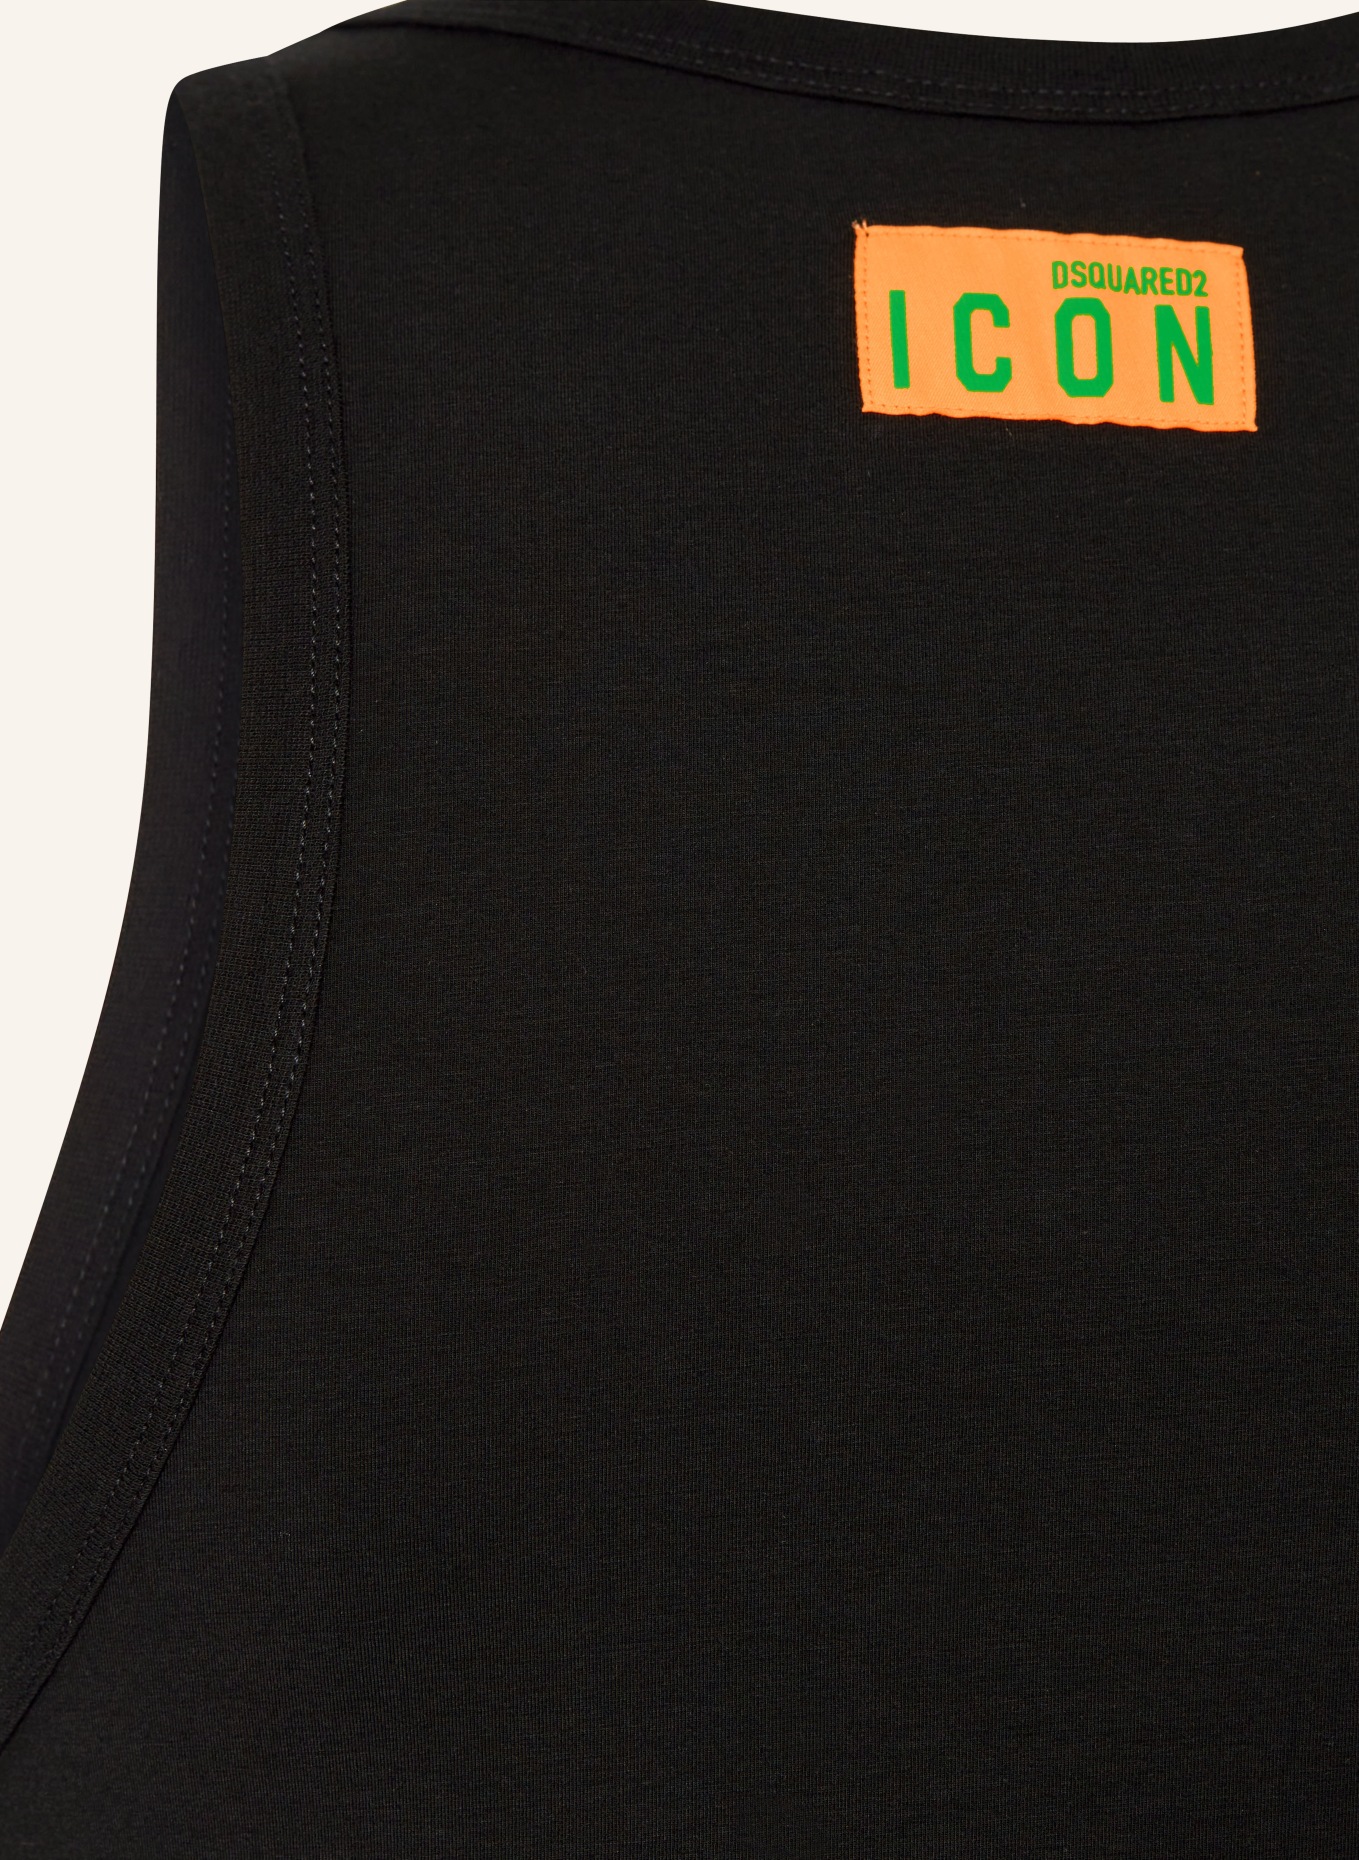 DSQUARED2 Unterhemd ICON, Farbe: SCHWARZ (Bild 3)